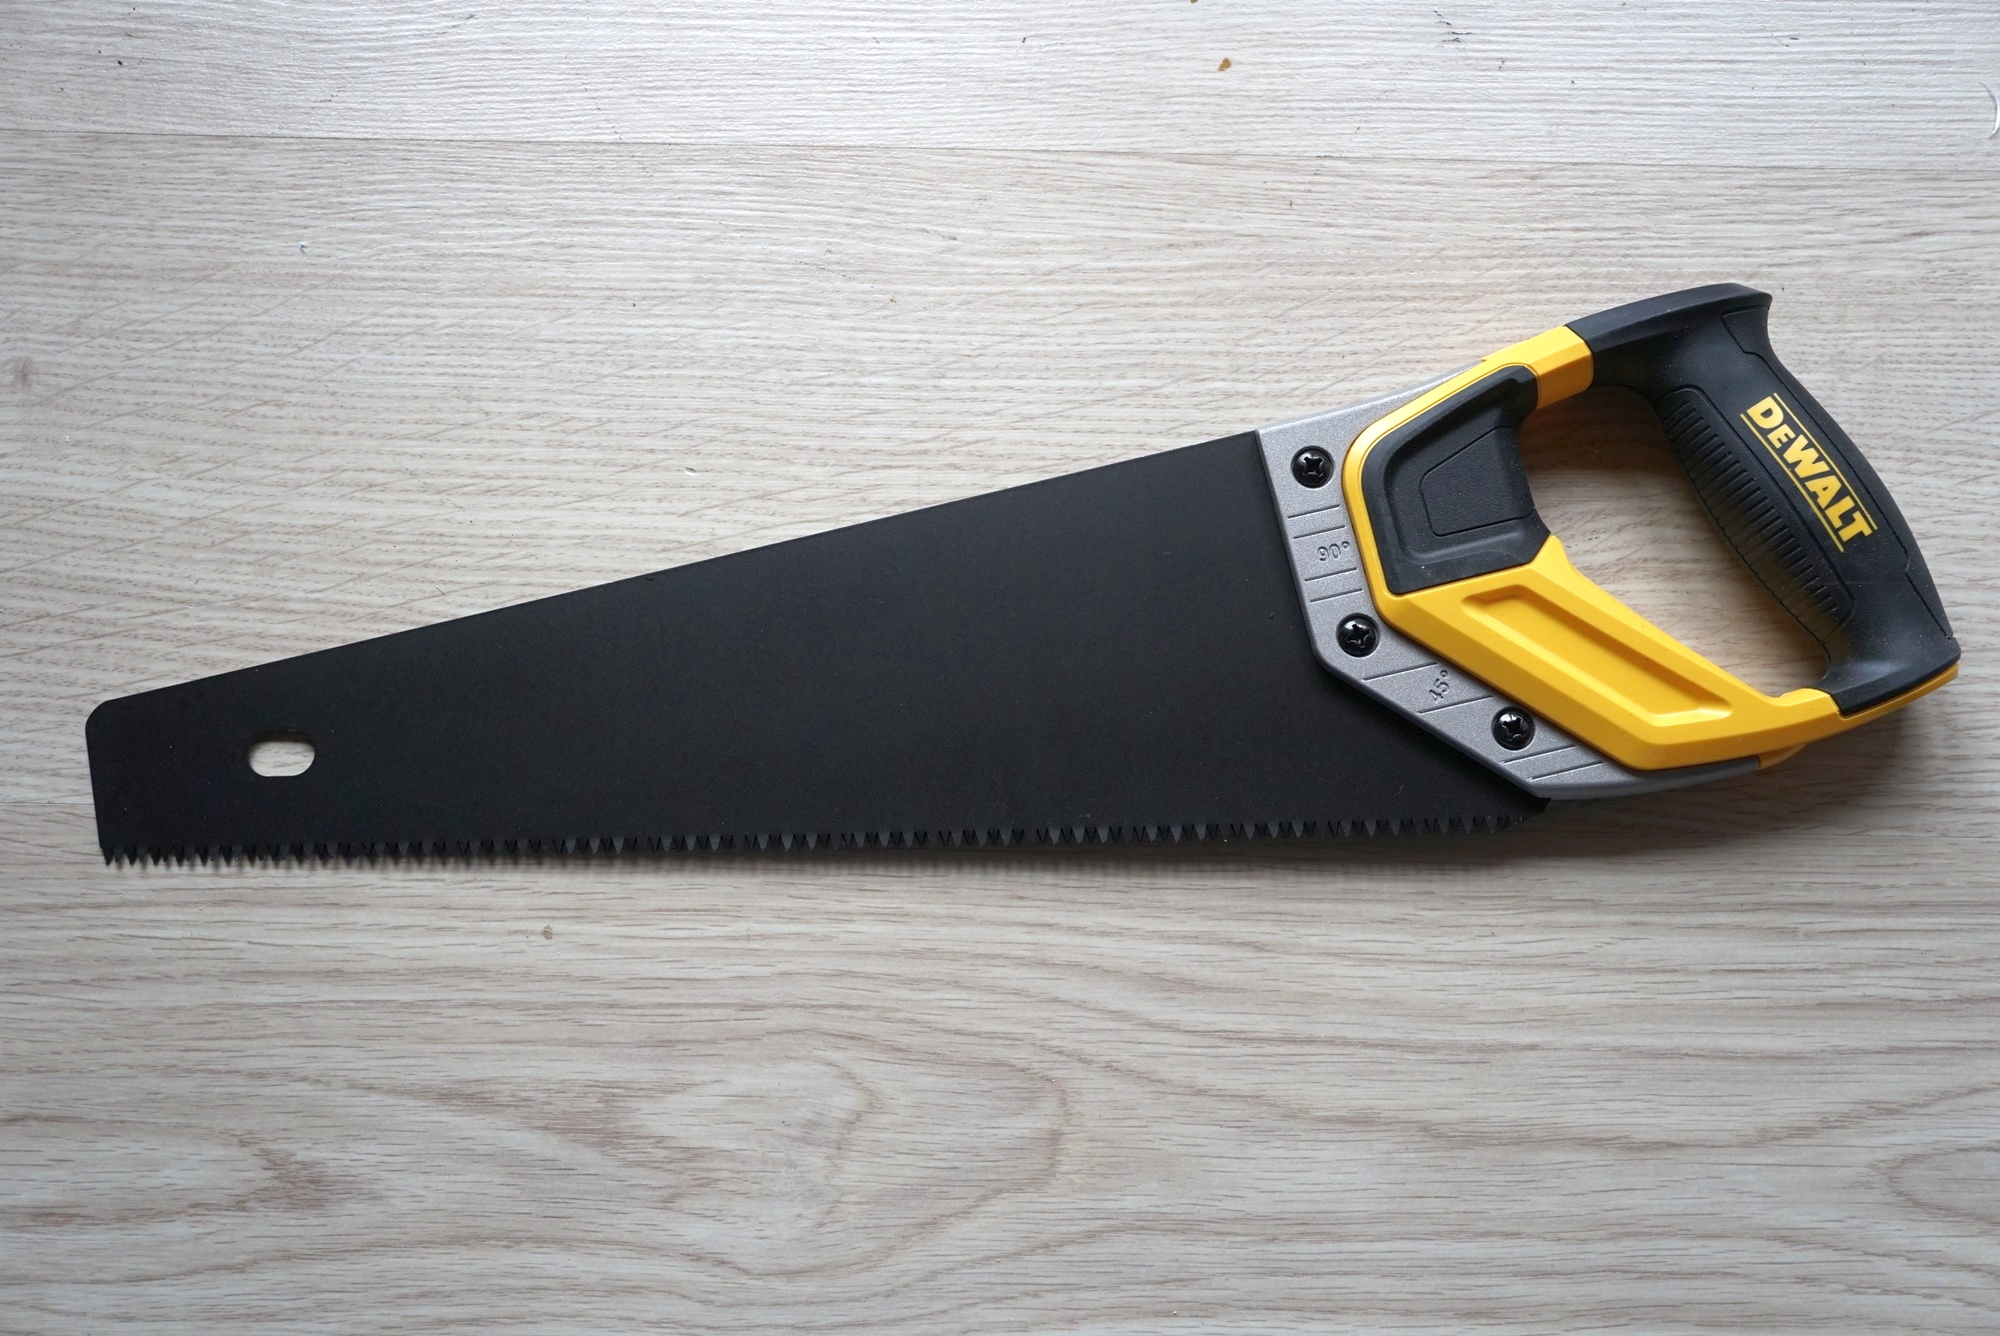 Японская ножовка DEWALT. Купить хорошую ножовку по дереву рейтинг лучших производителей.